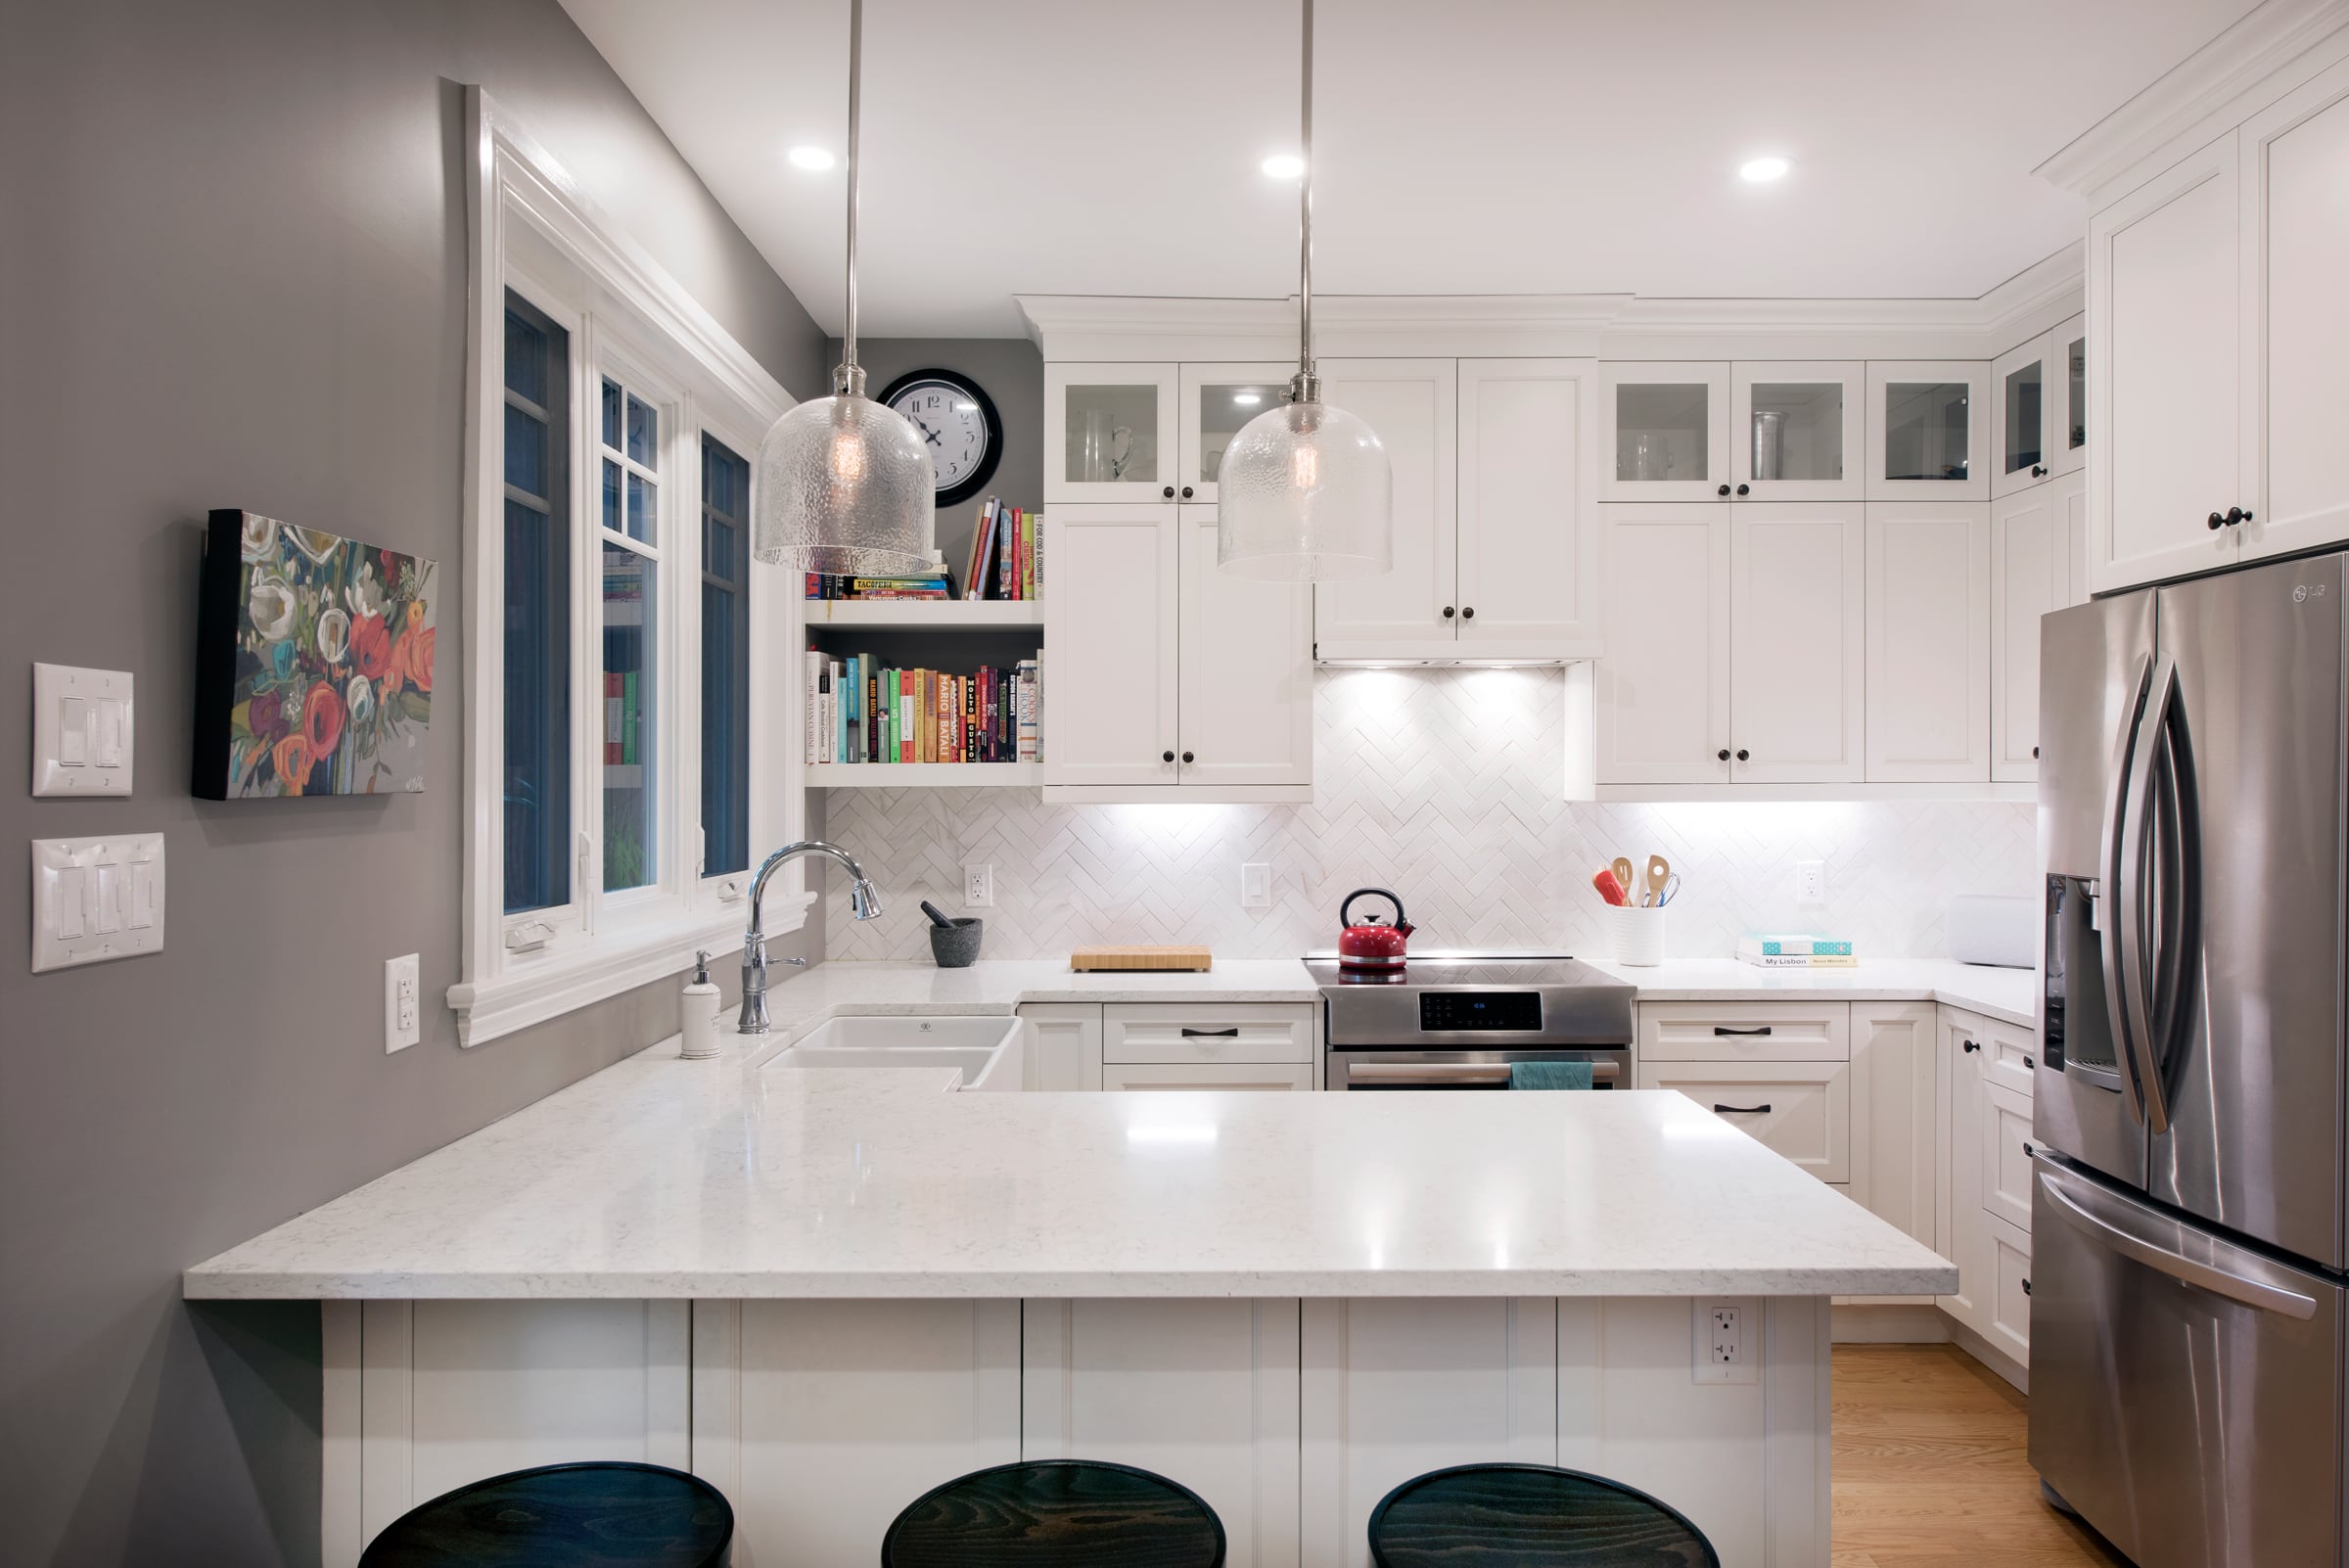 kitchen remodel upgrades Amsted Design-Build